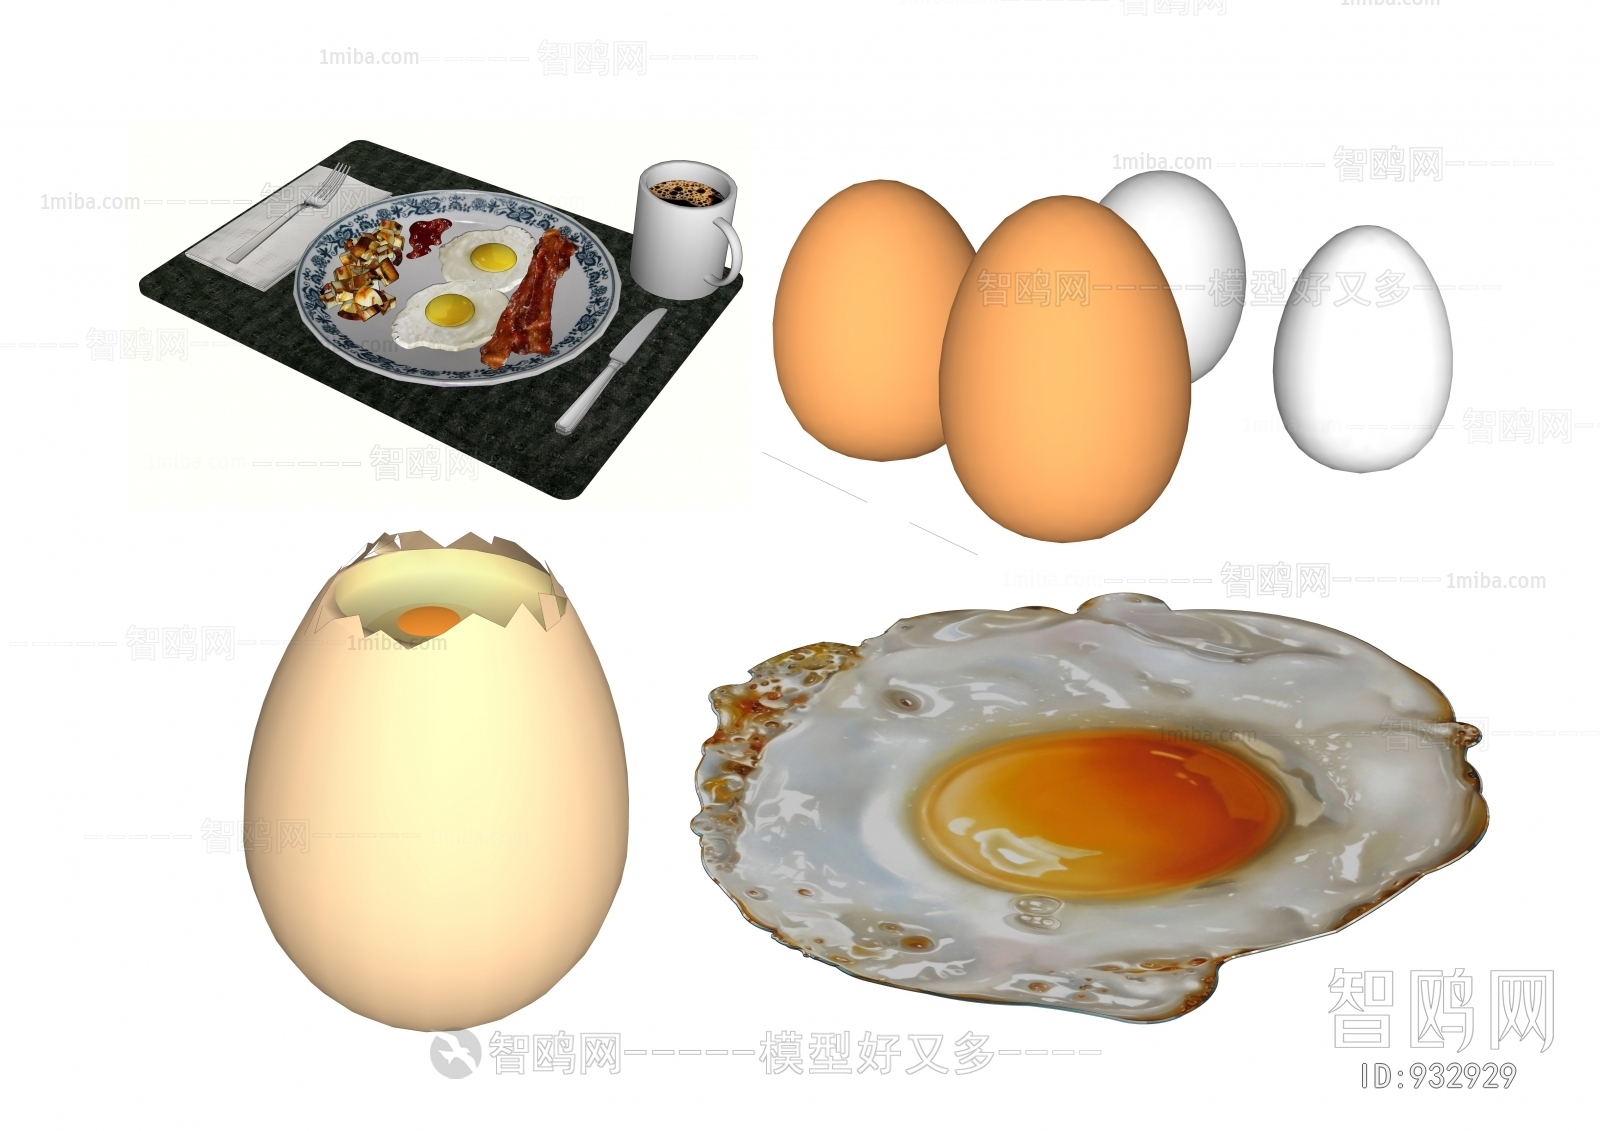 现代鸡蛋 荷包蛋 早餐 咖啡 鸡蛋壳 鸭蛋组合